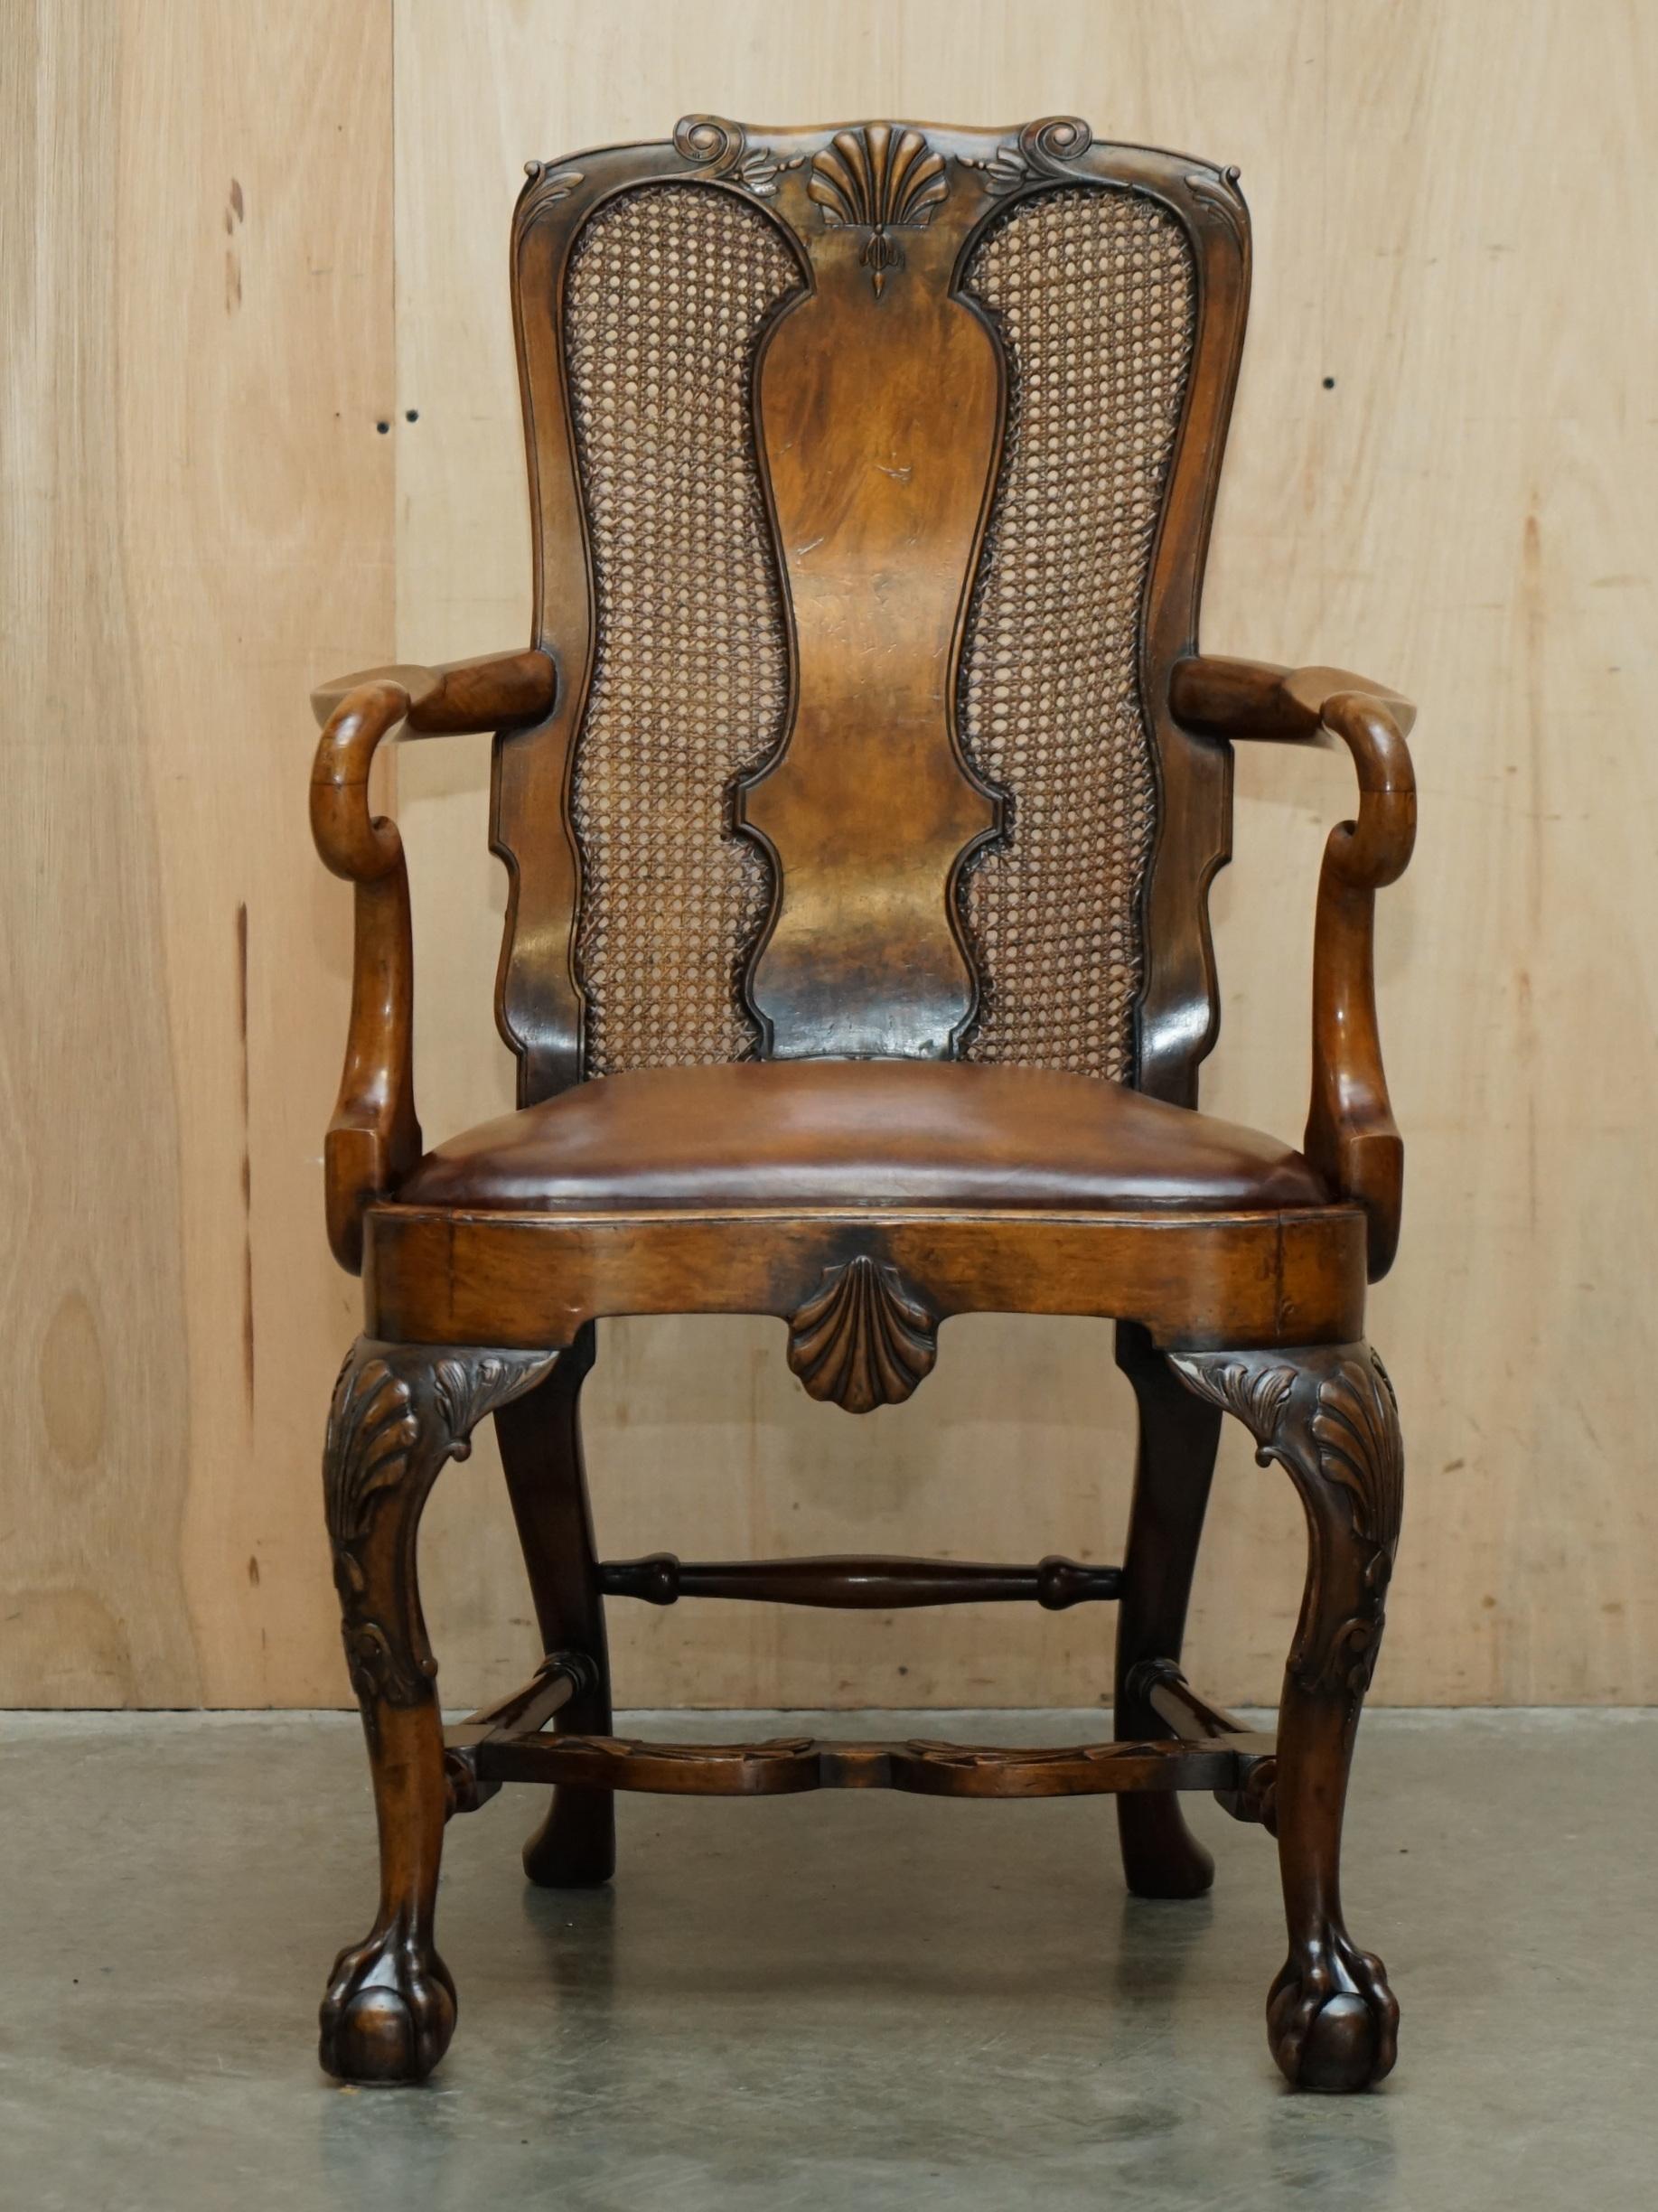 Royal House Antiques

Royal House Antiques freut sich, diesen sehr seltenen und sehr sammelwürdigen Thomas Chippendale-Sessel im Stil CIRCA-1920 mit geschnitzten Klauen- und Kugelfüßen und handgefärbtem braunem Ledersitz zum Verkauf anzubieten.